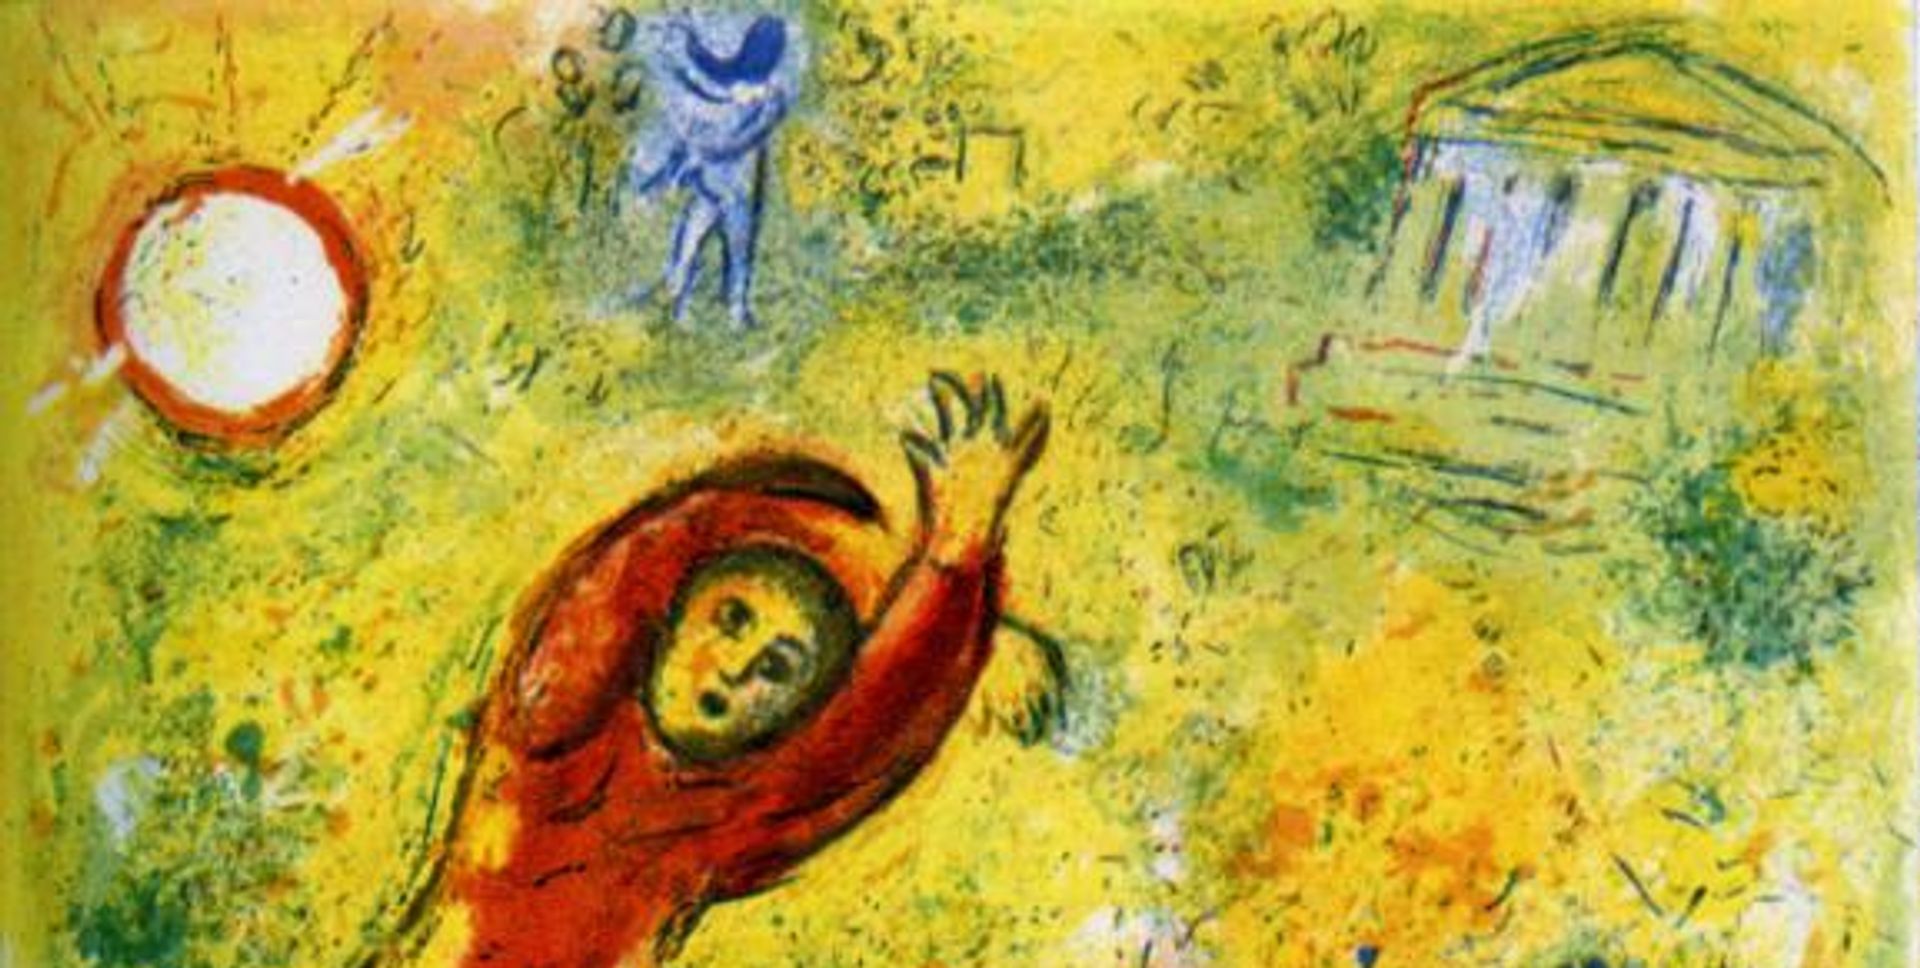 Marc Chagall, Les Fleurs saccagées, illustration pour le livre Daphnis et Chloé, 1961, lithographie. © ADAGP, Paris, 2019. © Photo : RMN-Grand Palais (musée Marc Chagall)